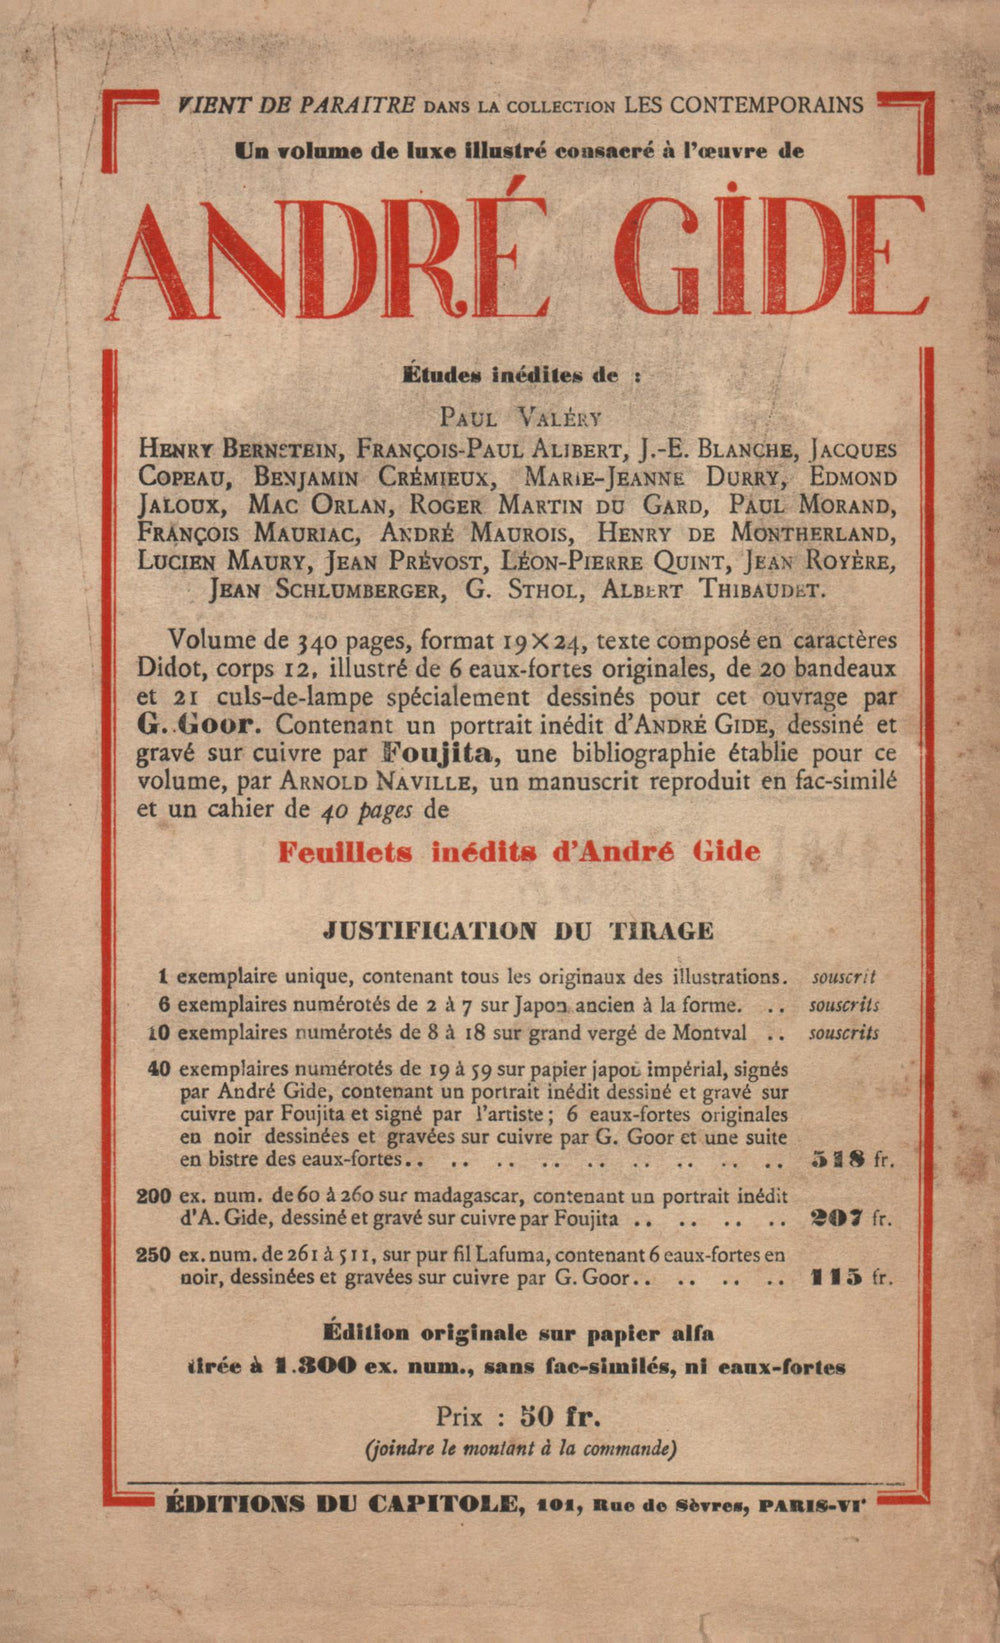 La Nouvelle Revue Française N' 172 (Janvier 1928)